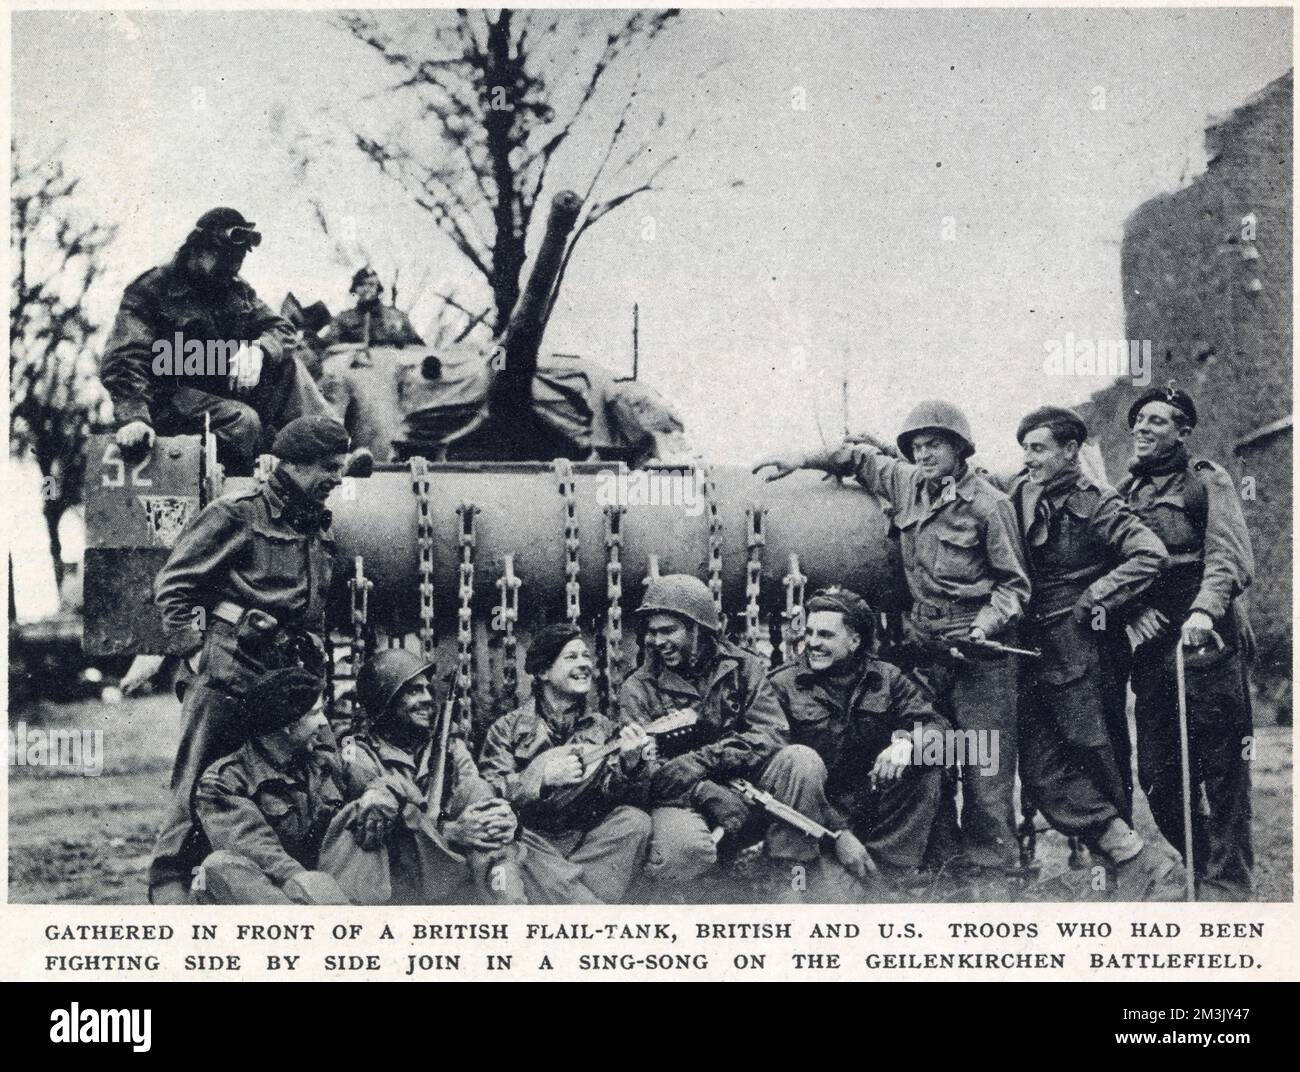 Britische und amerikanische Truppen, die Ende 1944 vor einem Sherman-Flail-Panzer in der Nähe von Geilenkirchen ein Lied singen. Geilenkirchen war ein Schlüsselpunkt der deutschen „Siegfried-Linie“ und wurde im November 1944 von einer kombinierten Truppe britischer und amerikanischer Soldaten gefangen genommen. Stockfoto